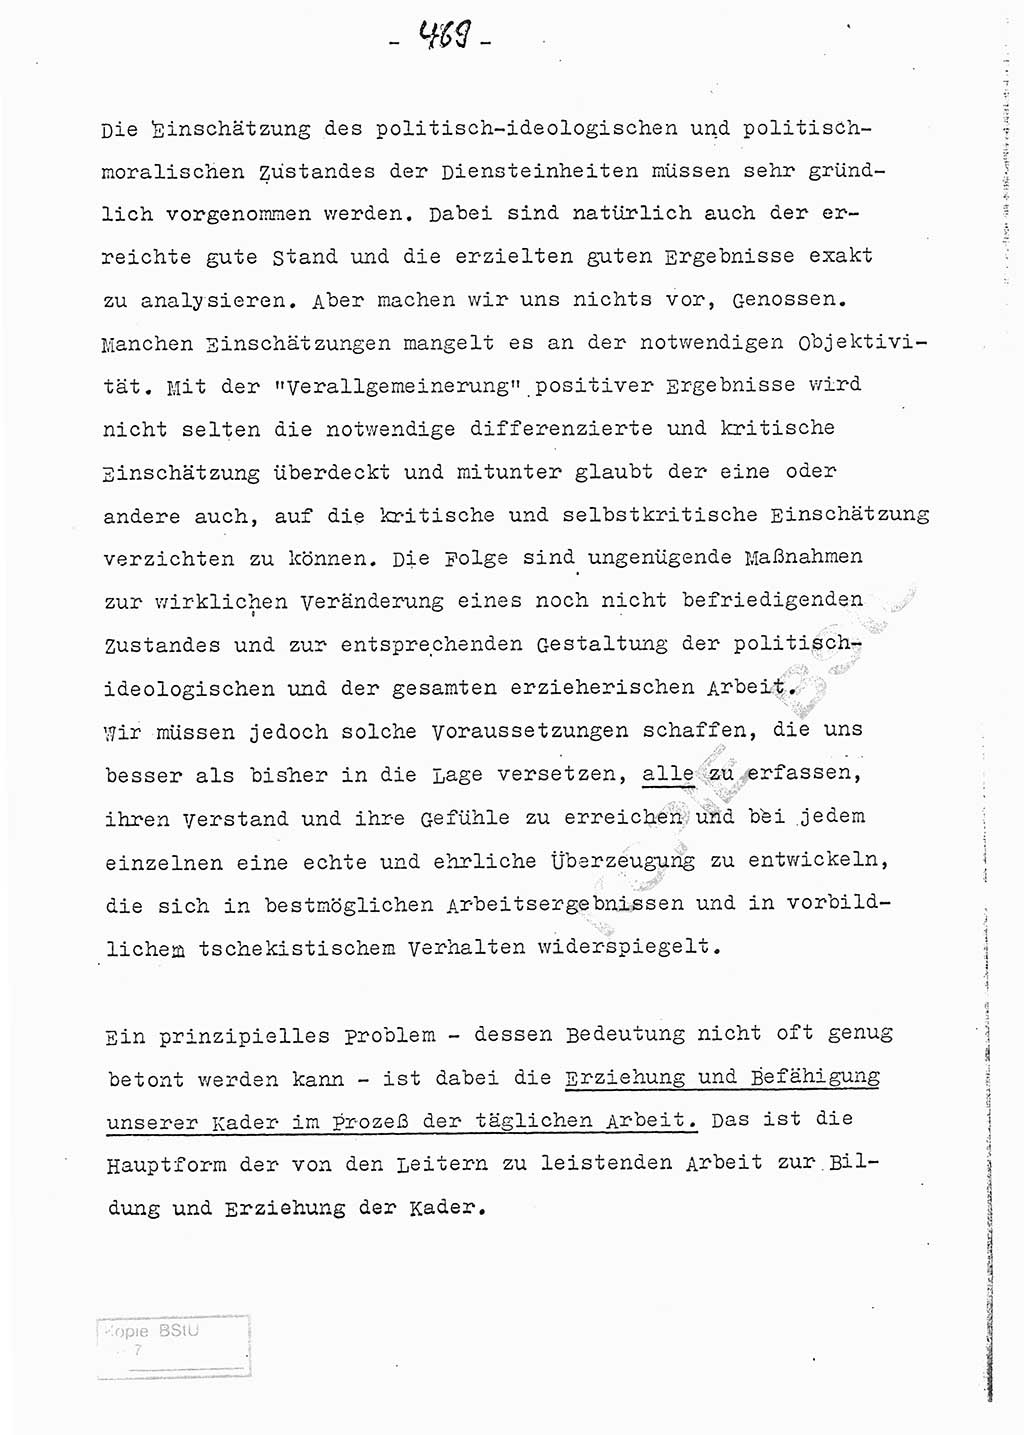 Referat (Entwurf) des Genossen Minister (Generaloberst Erich Mielke) auf der Dienstkonferenz 1972, Ministerium für Staatssicherheit (MfS) [Deutsche Demokratische Republik (DDR)], Der Minister, Geheime Verschlußsache (GVS) 008-150/72, Berlin 25.2.1972, Seite 469 (Ref. Entw. DK MfS DDR Min. GVS 008-150/72 1972, S. 469)